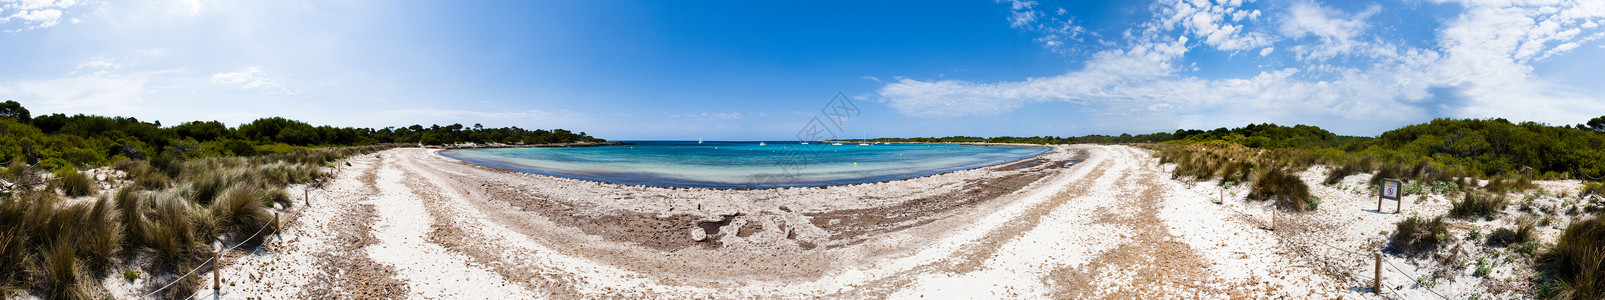 索努拉沙滩全景假期海滩旅行背景图片